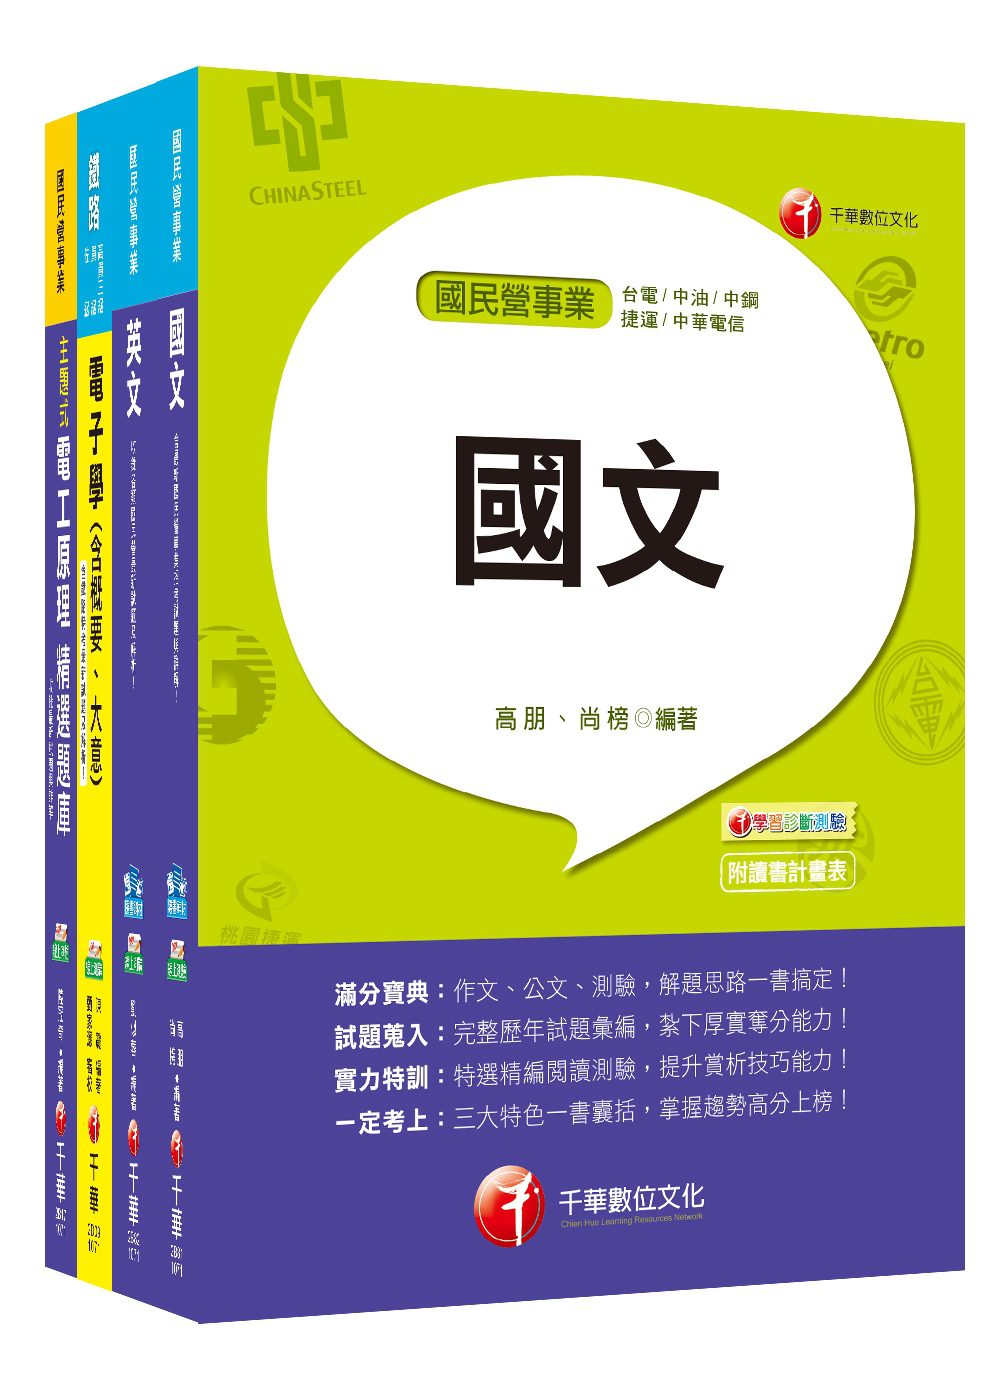 107年【電氣】台灣菸酒公司招考評價職位人員課文版套書